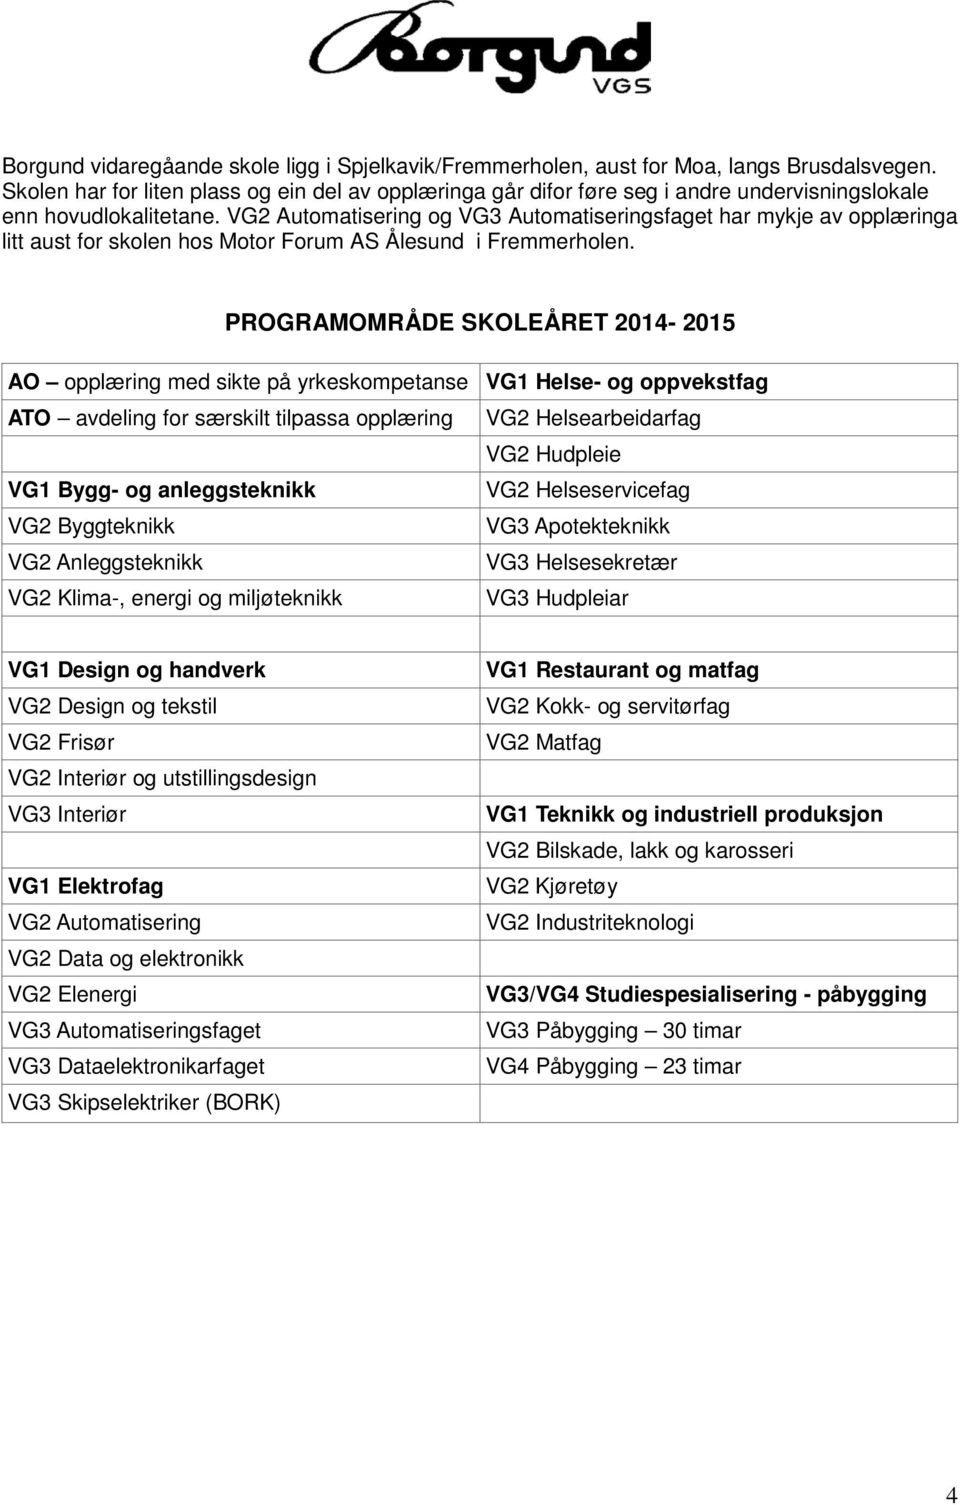 VG2 Automatisering og VG3 Automatiseringsfaget har mykje av opplæringa litt aust for skolen hos Motor Forum AS Ålesund i Fremmerholen.